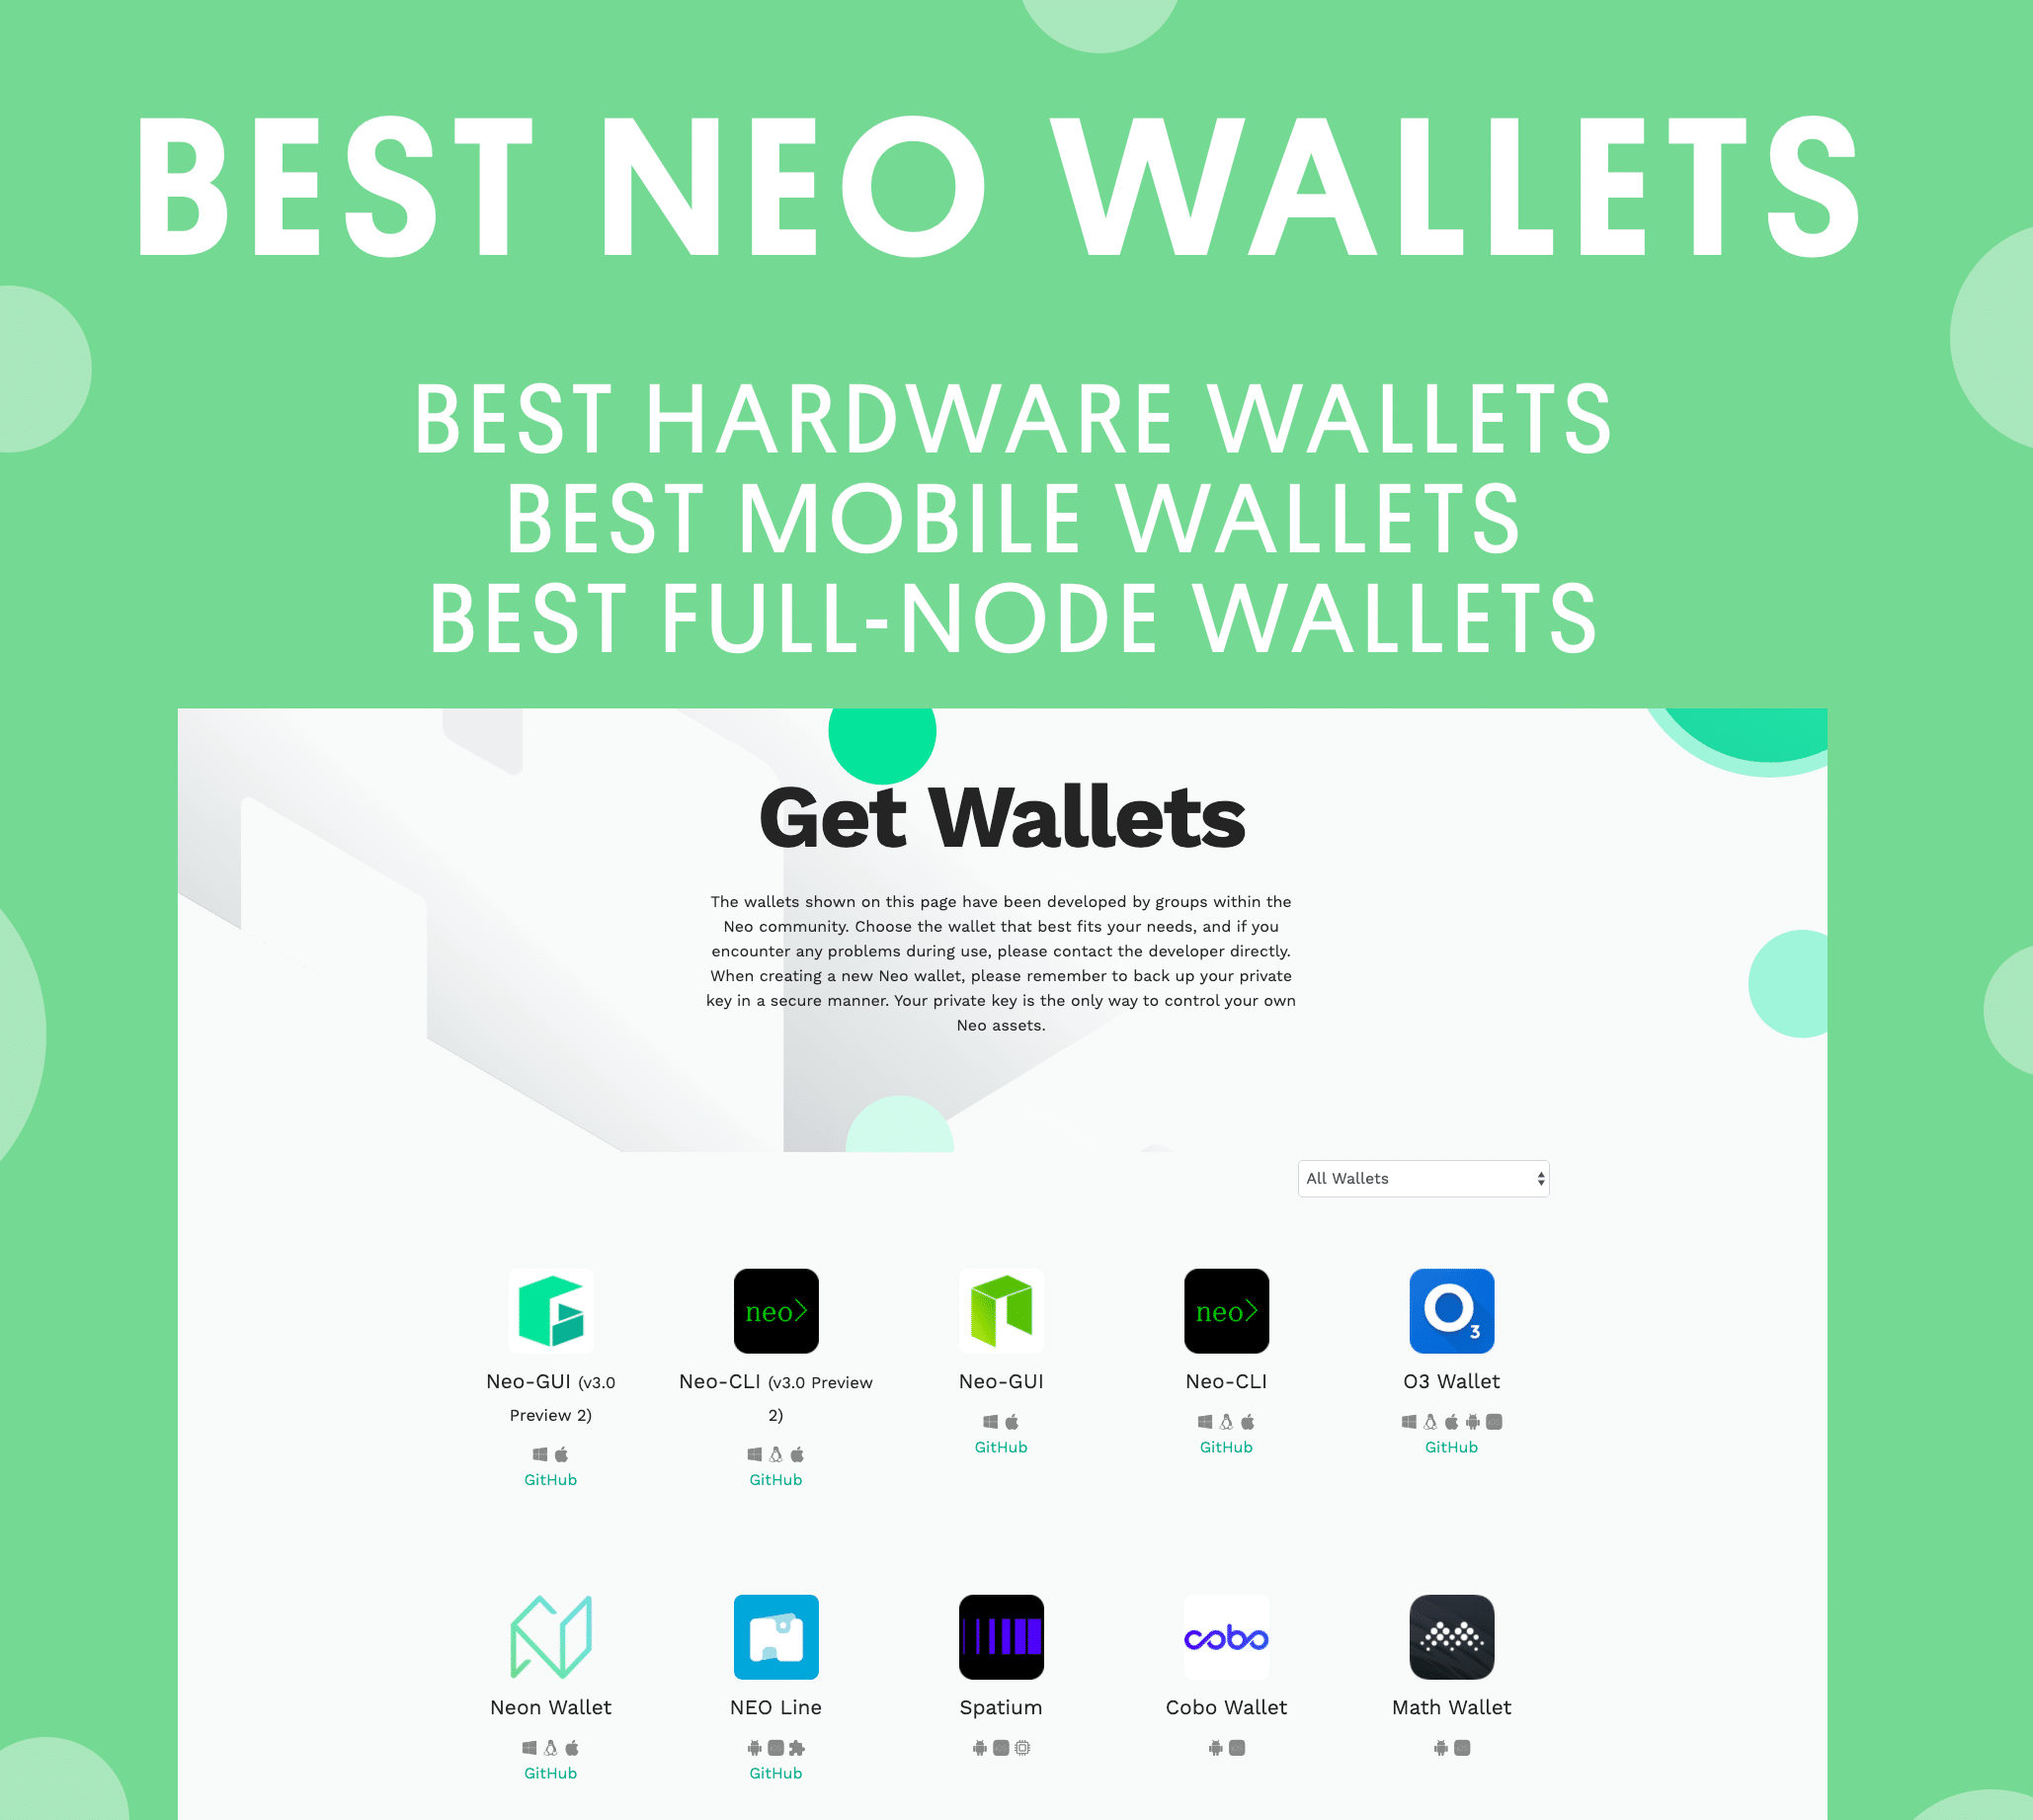 Best Neo wallets guide